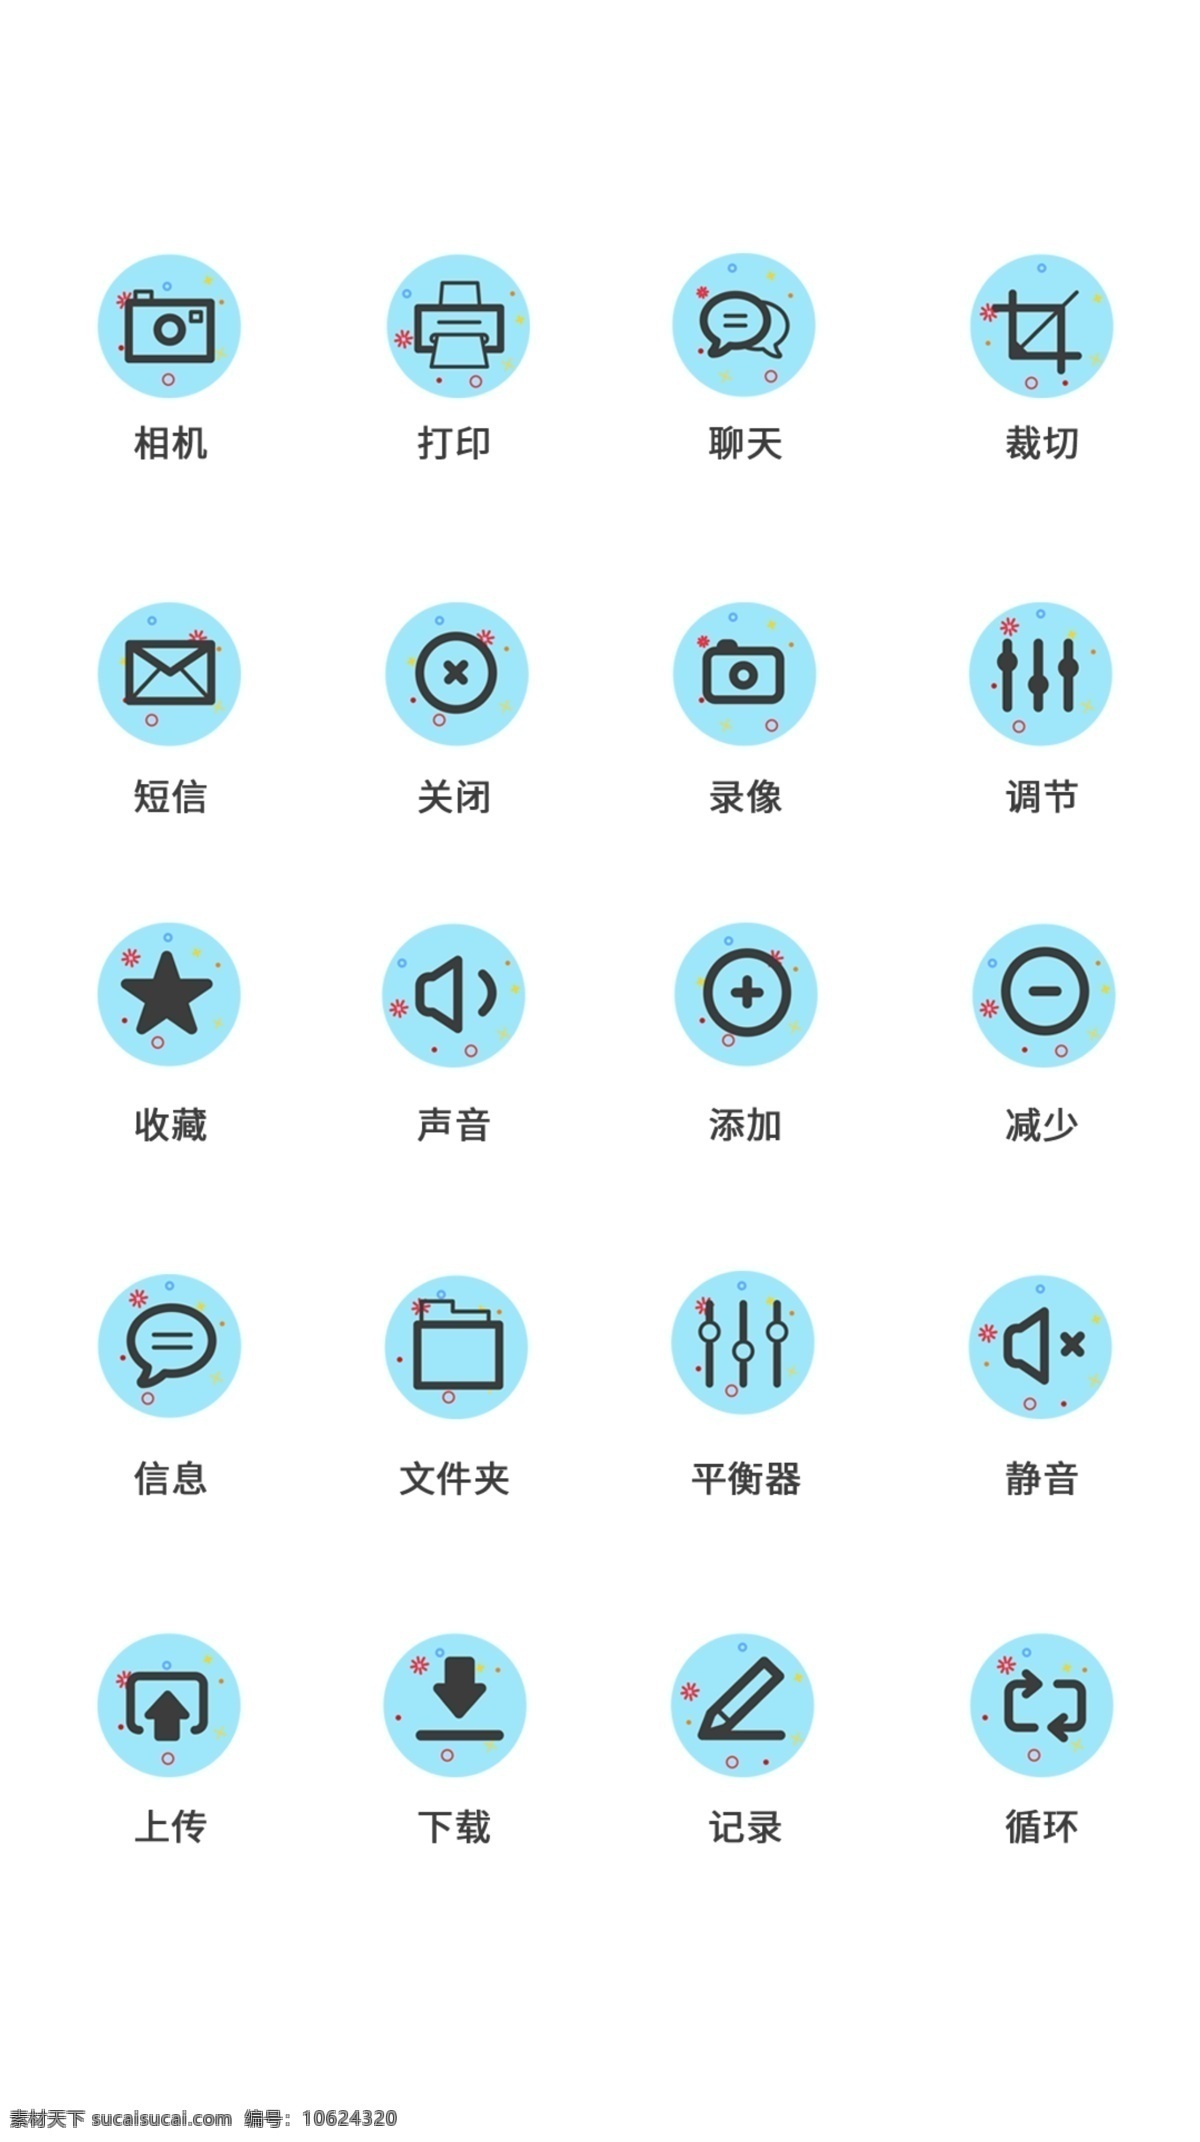 ui 工具 通用 icon 图标 图标icon 时尚图标 工具icon ui设计 icon设计 工具图标 ui设计图标 ui图标